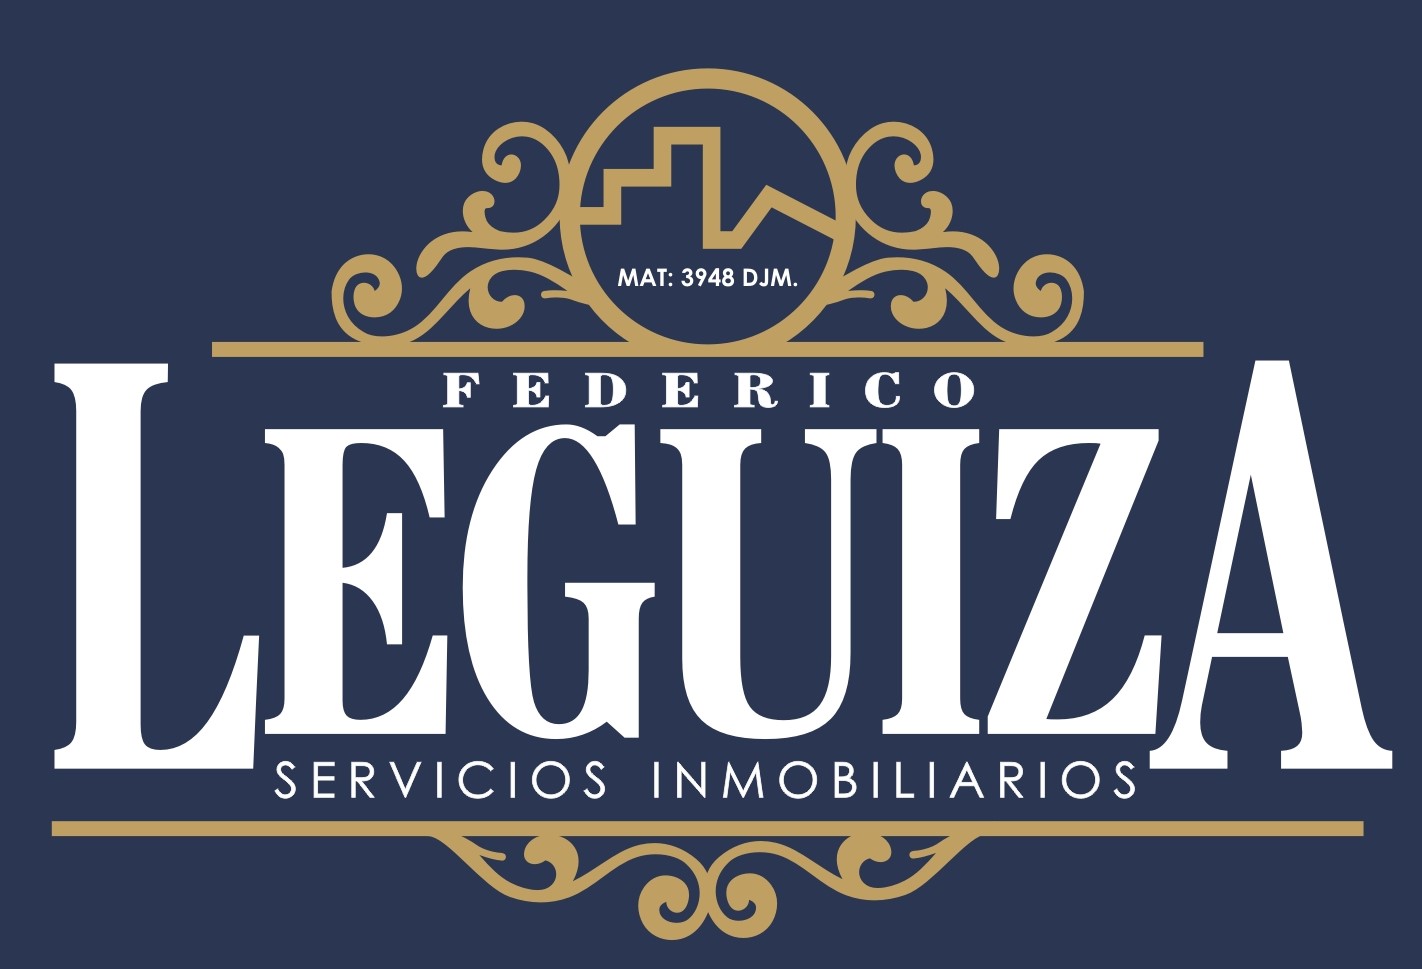 FEDERICO LEGUIZA SERVICIOS INMOBILIARIOS